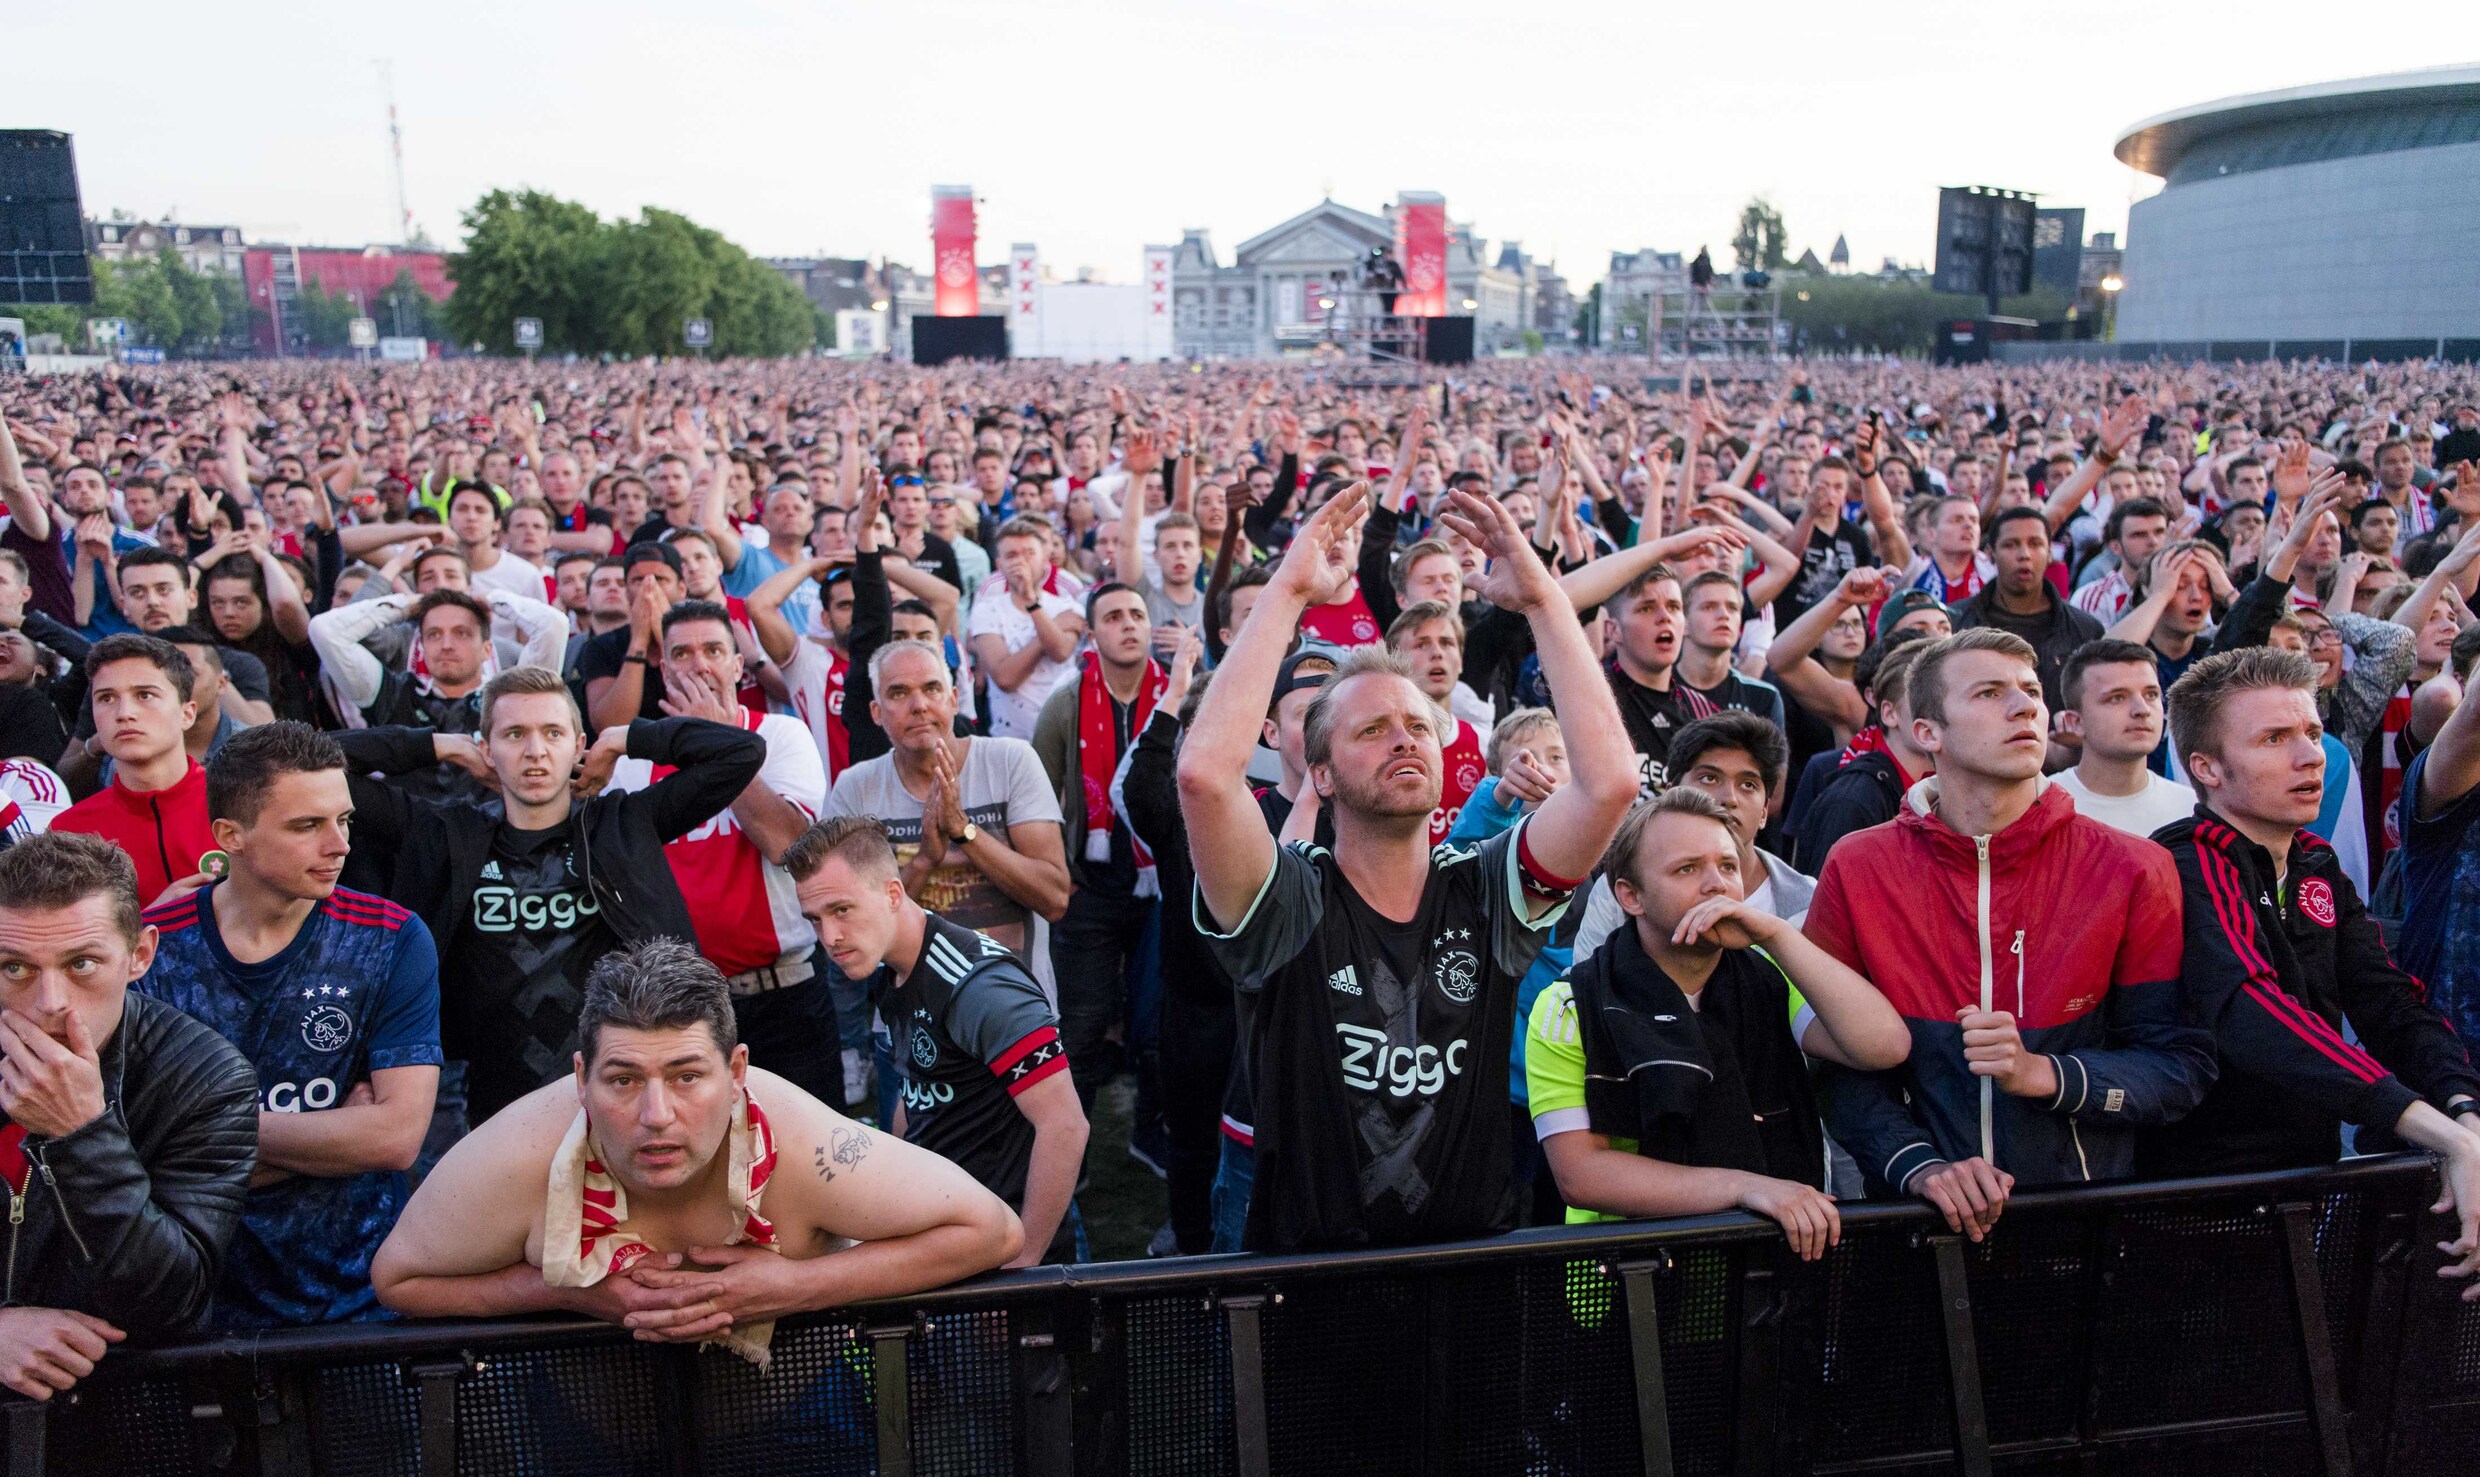 16 aanhoudingen en wat blikjes bier naar het scherm op met 100.000 mensen volgelopen Museumplein, maar Amsterdam blijft rustig